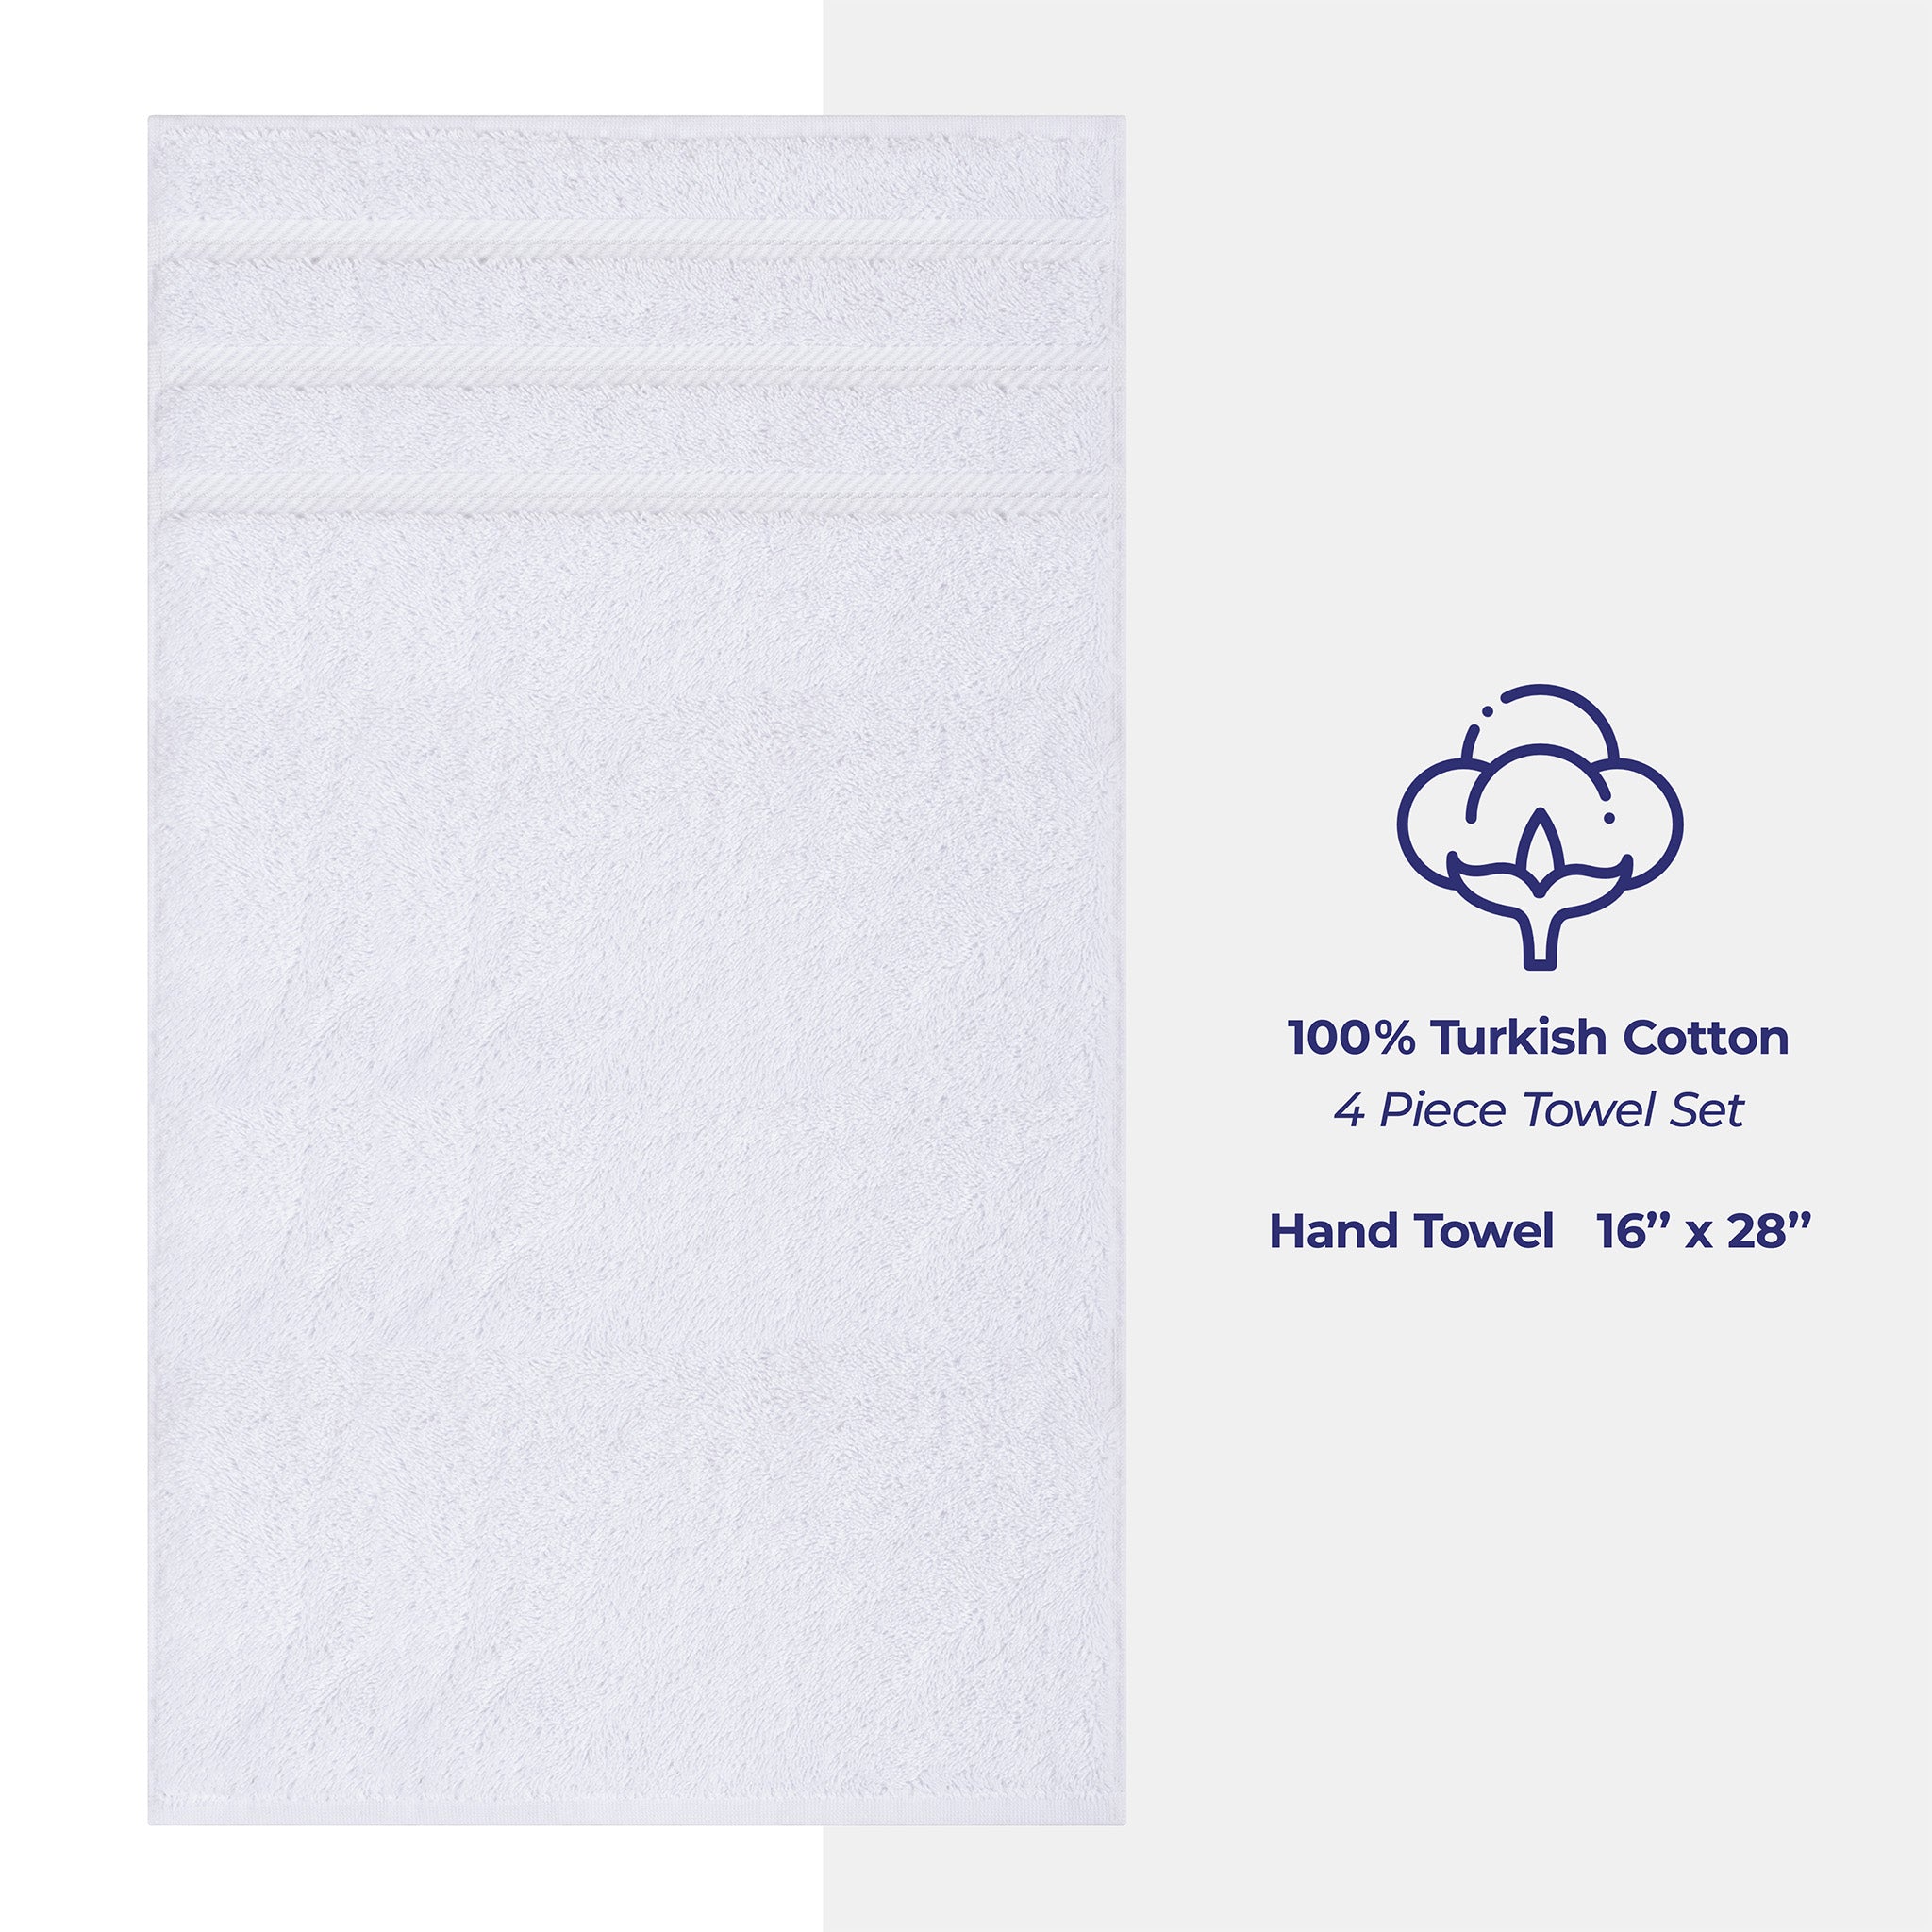 https://americansoftlinen.com/cdn/shop/files/american-soft-linen-4-pack-hand-towel-set-white-4.jpg?v=1698068061&width=2048